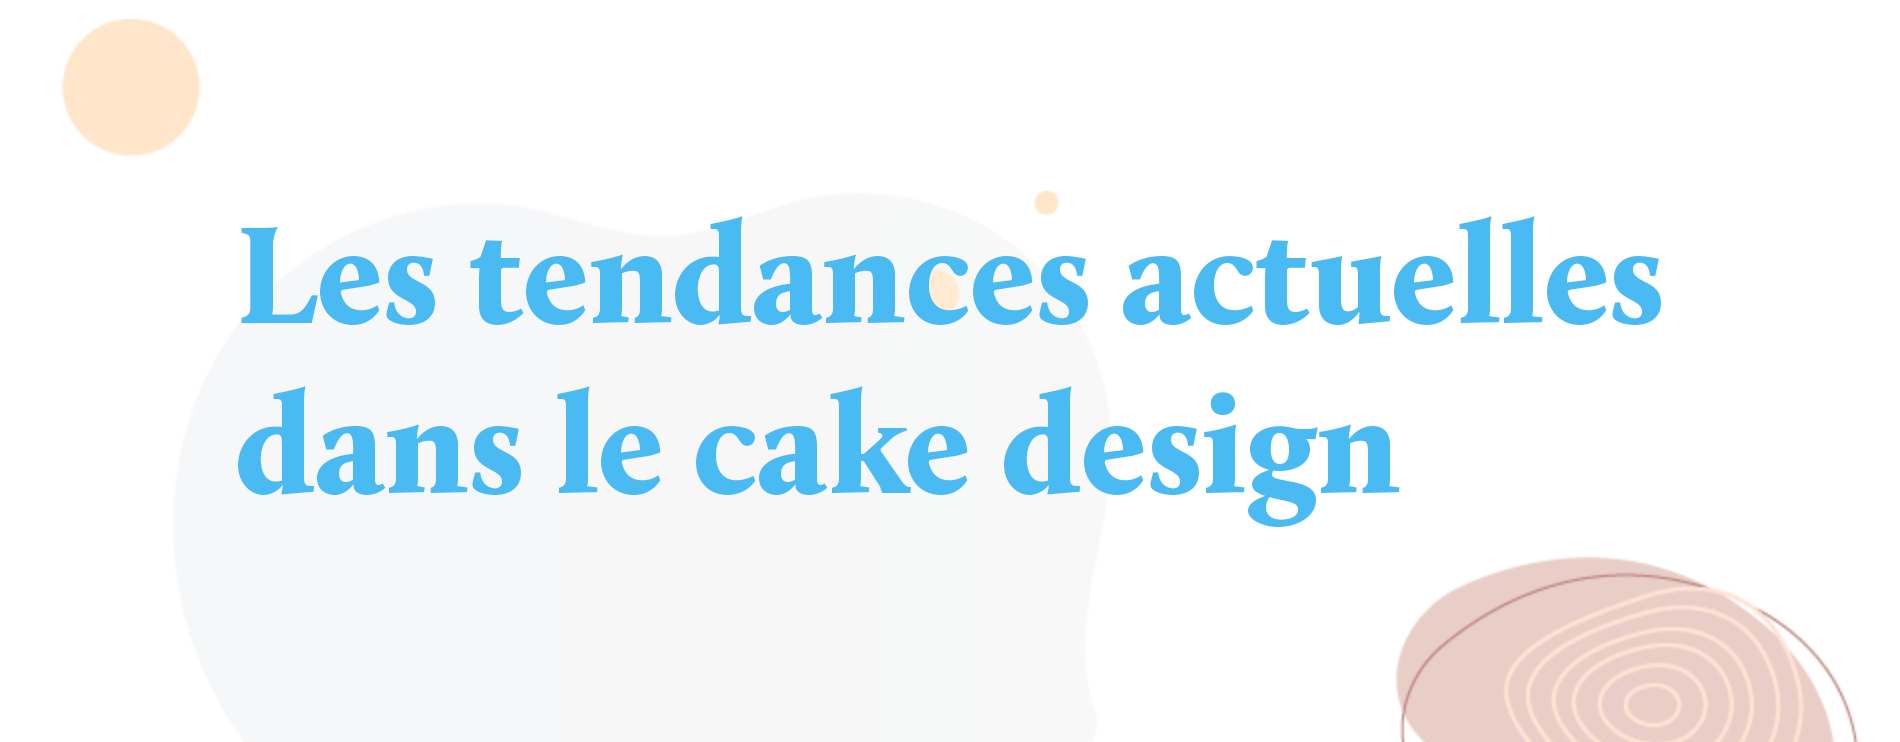 Les tendances actuelles dans le cake design